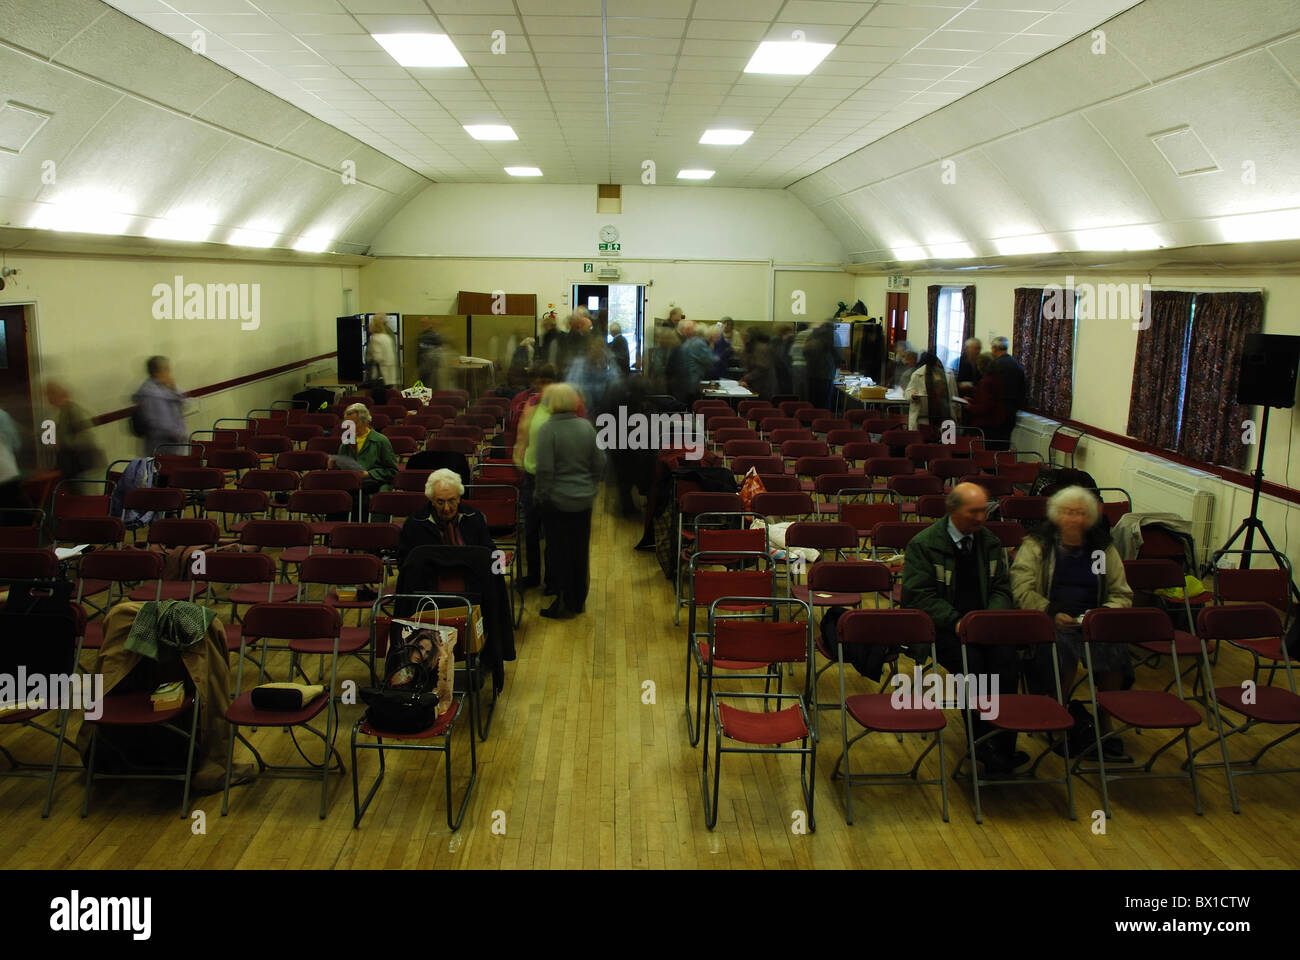 Les villageois de l'assemblage pour réunion dans une salle paroissiale, Wiltshire, uk Banque D'Images